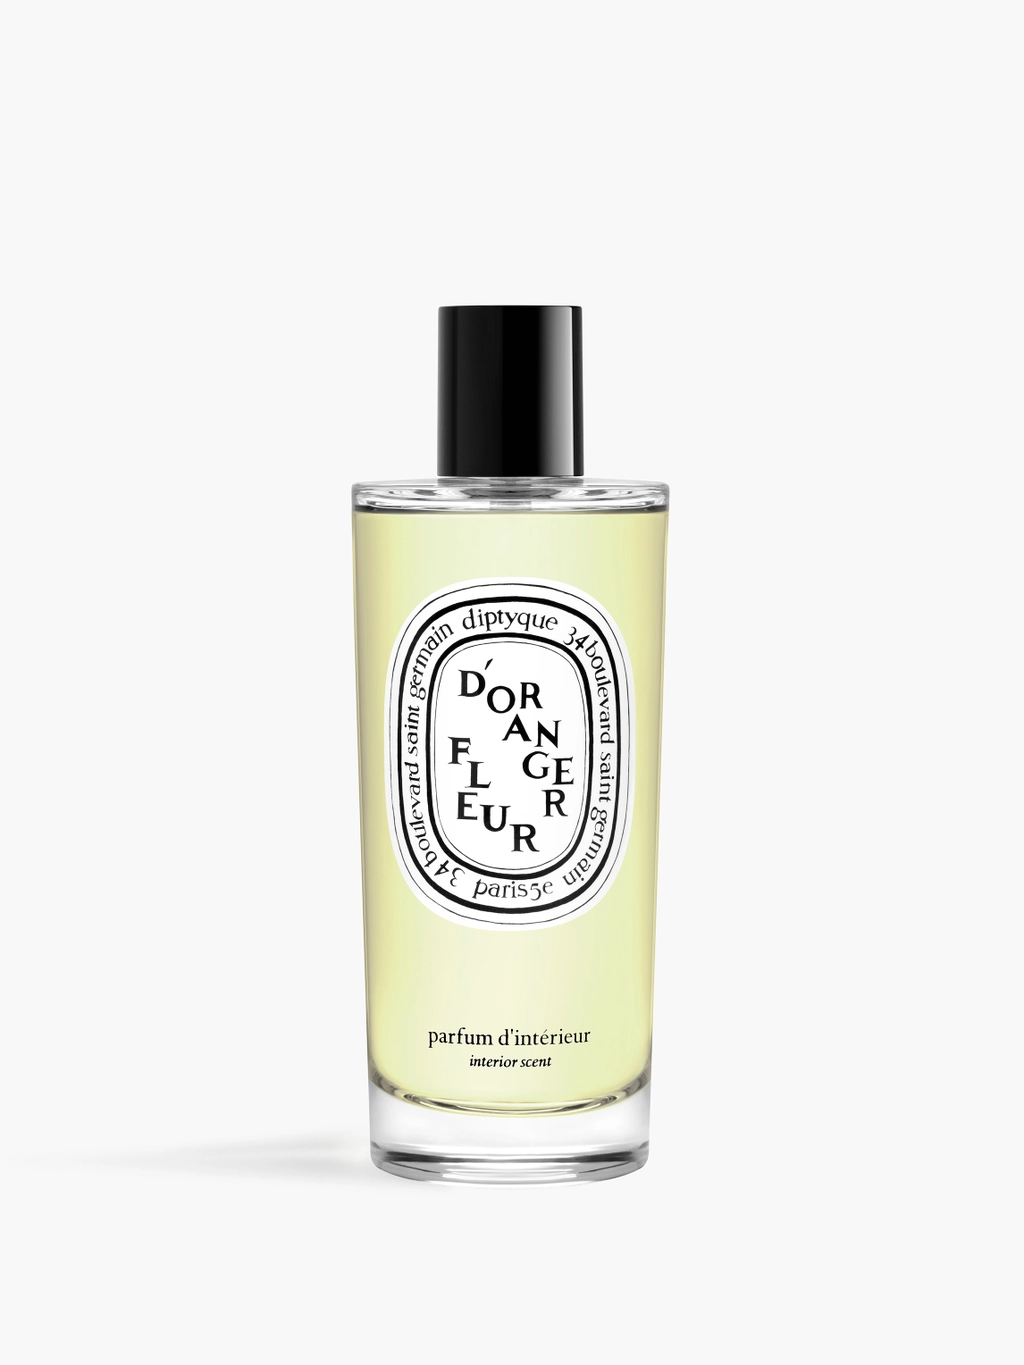 Diffuseur parfum Voiture Fleur d'oranger - 500ml